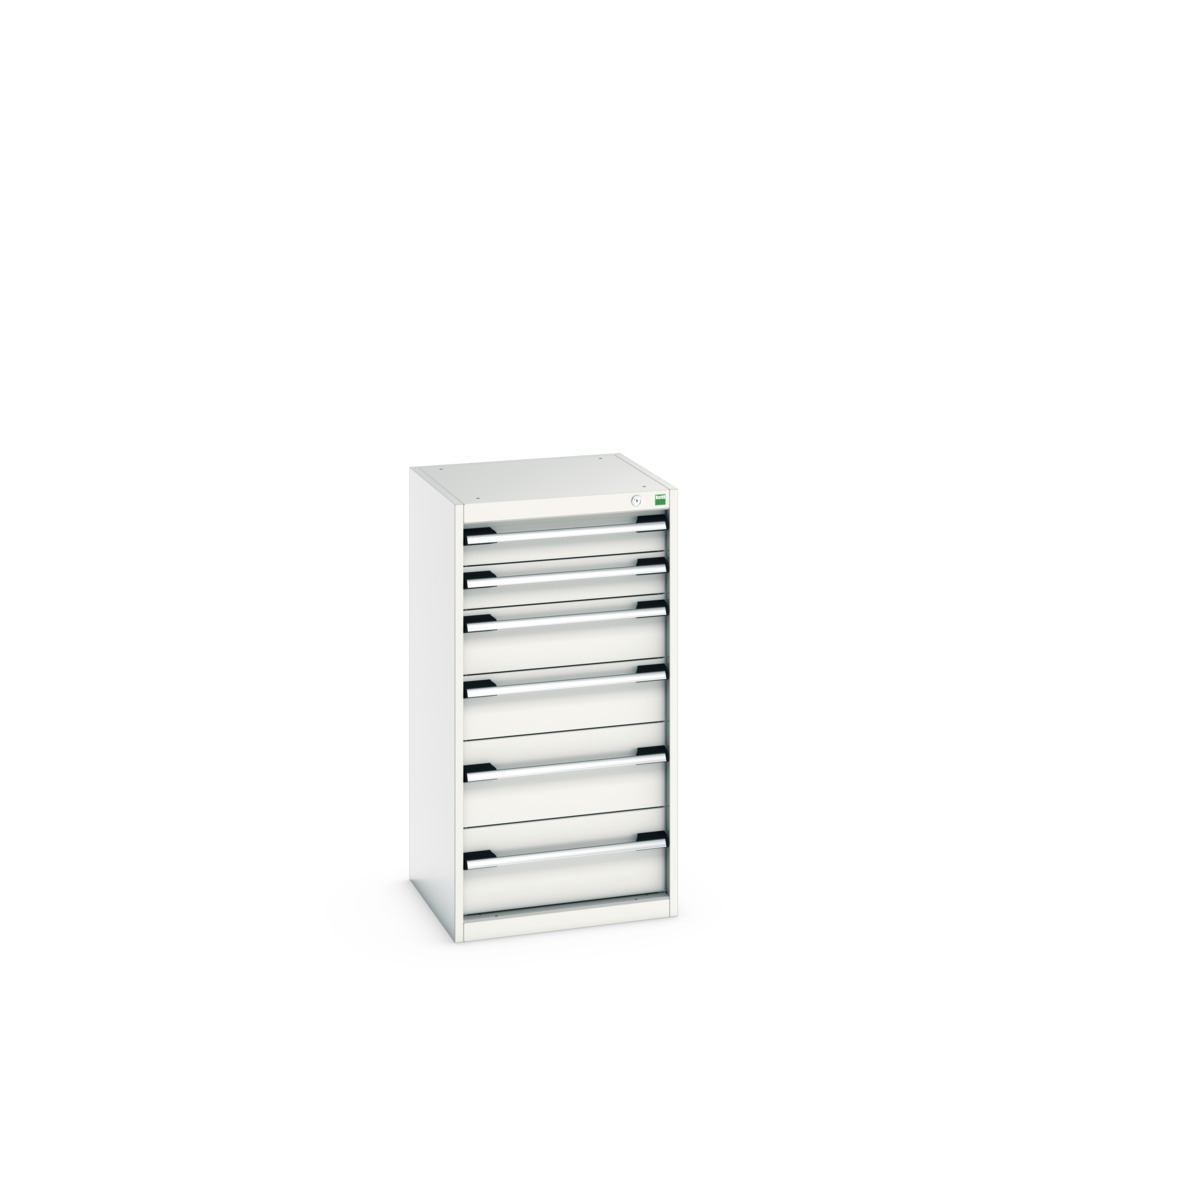 40010047.16V - cubio drawer cabinet